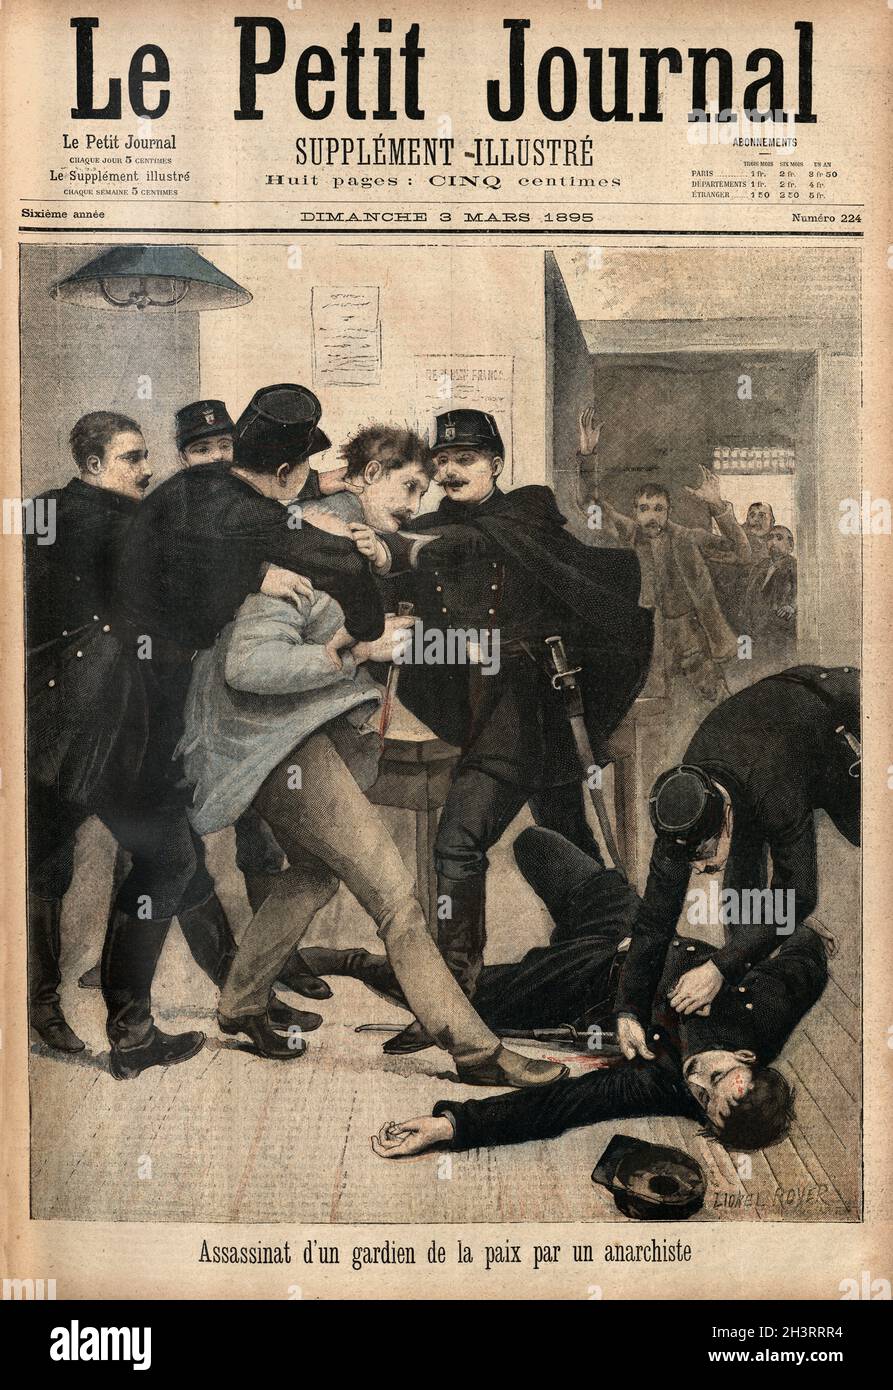 Assassinat d'un gardien de la paix par un anarchiste, assassinio di un ufficiale di polizia da parte di un anarchico. Le Petit Journal, 1895 Foto Stock